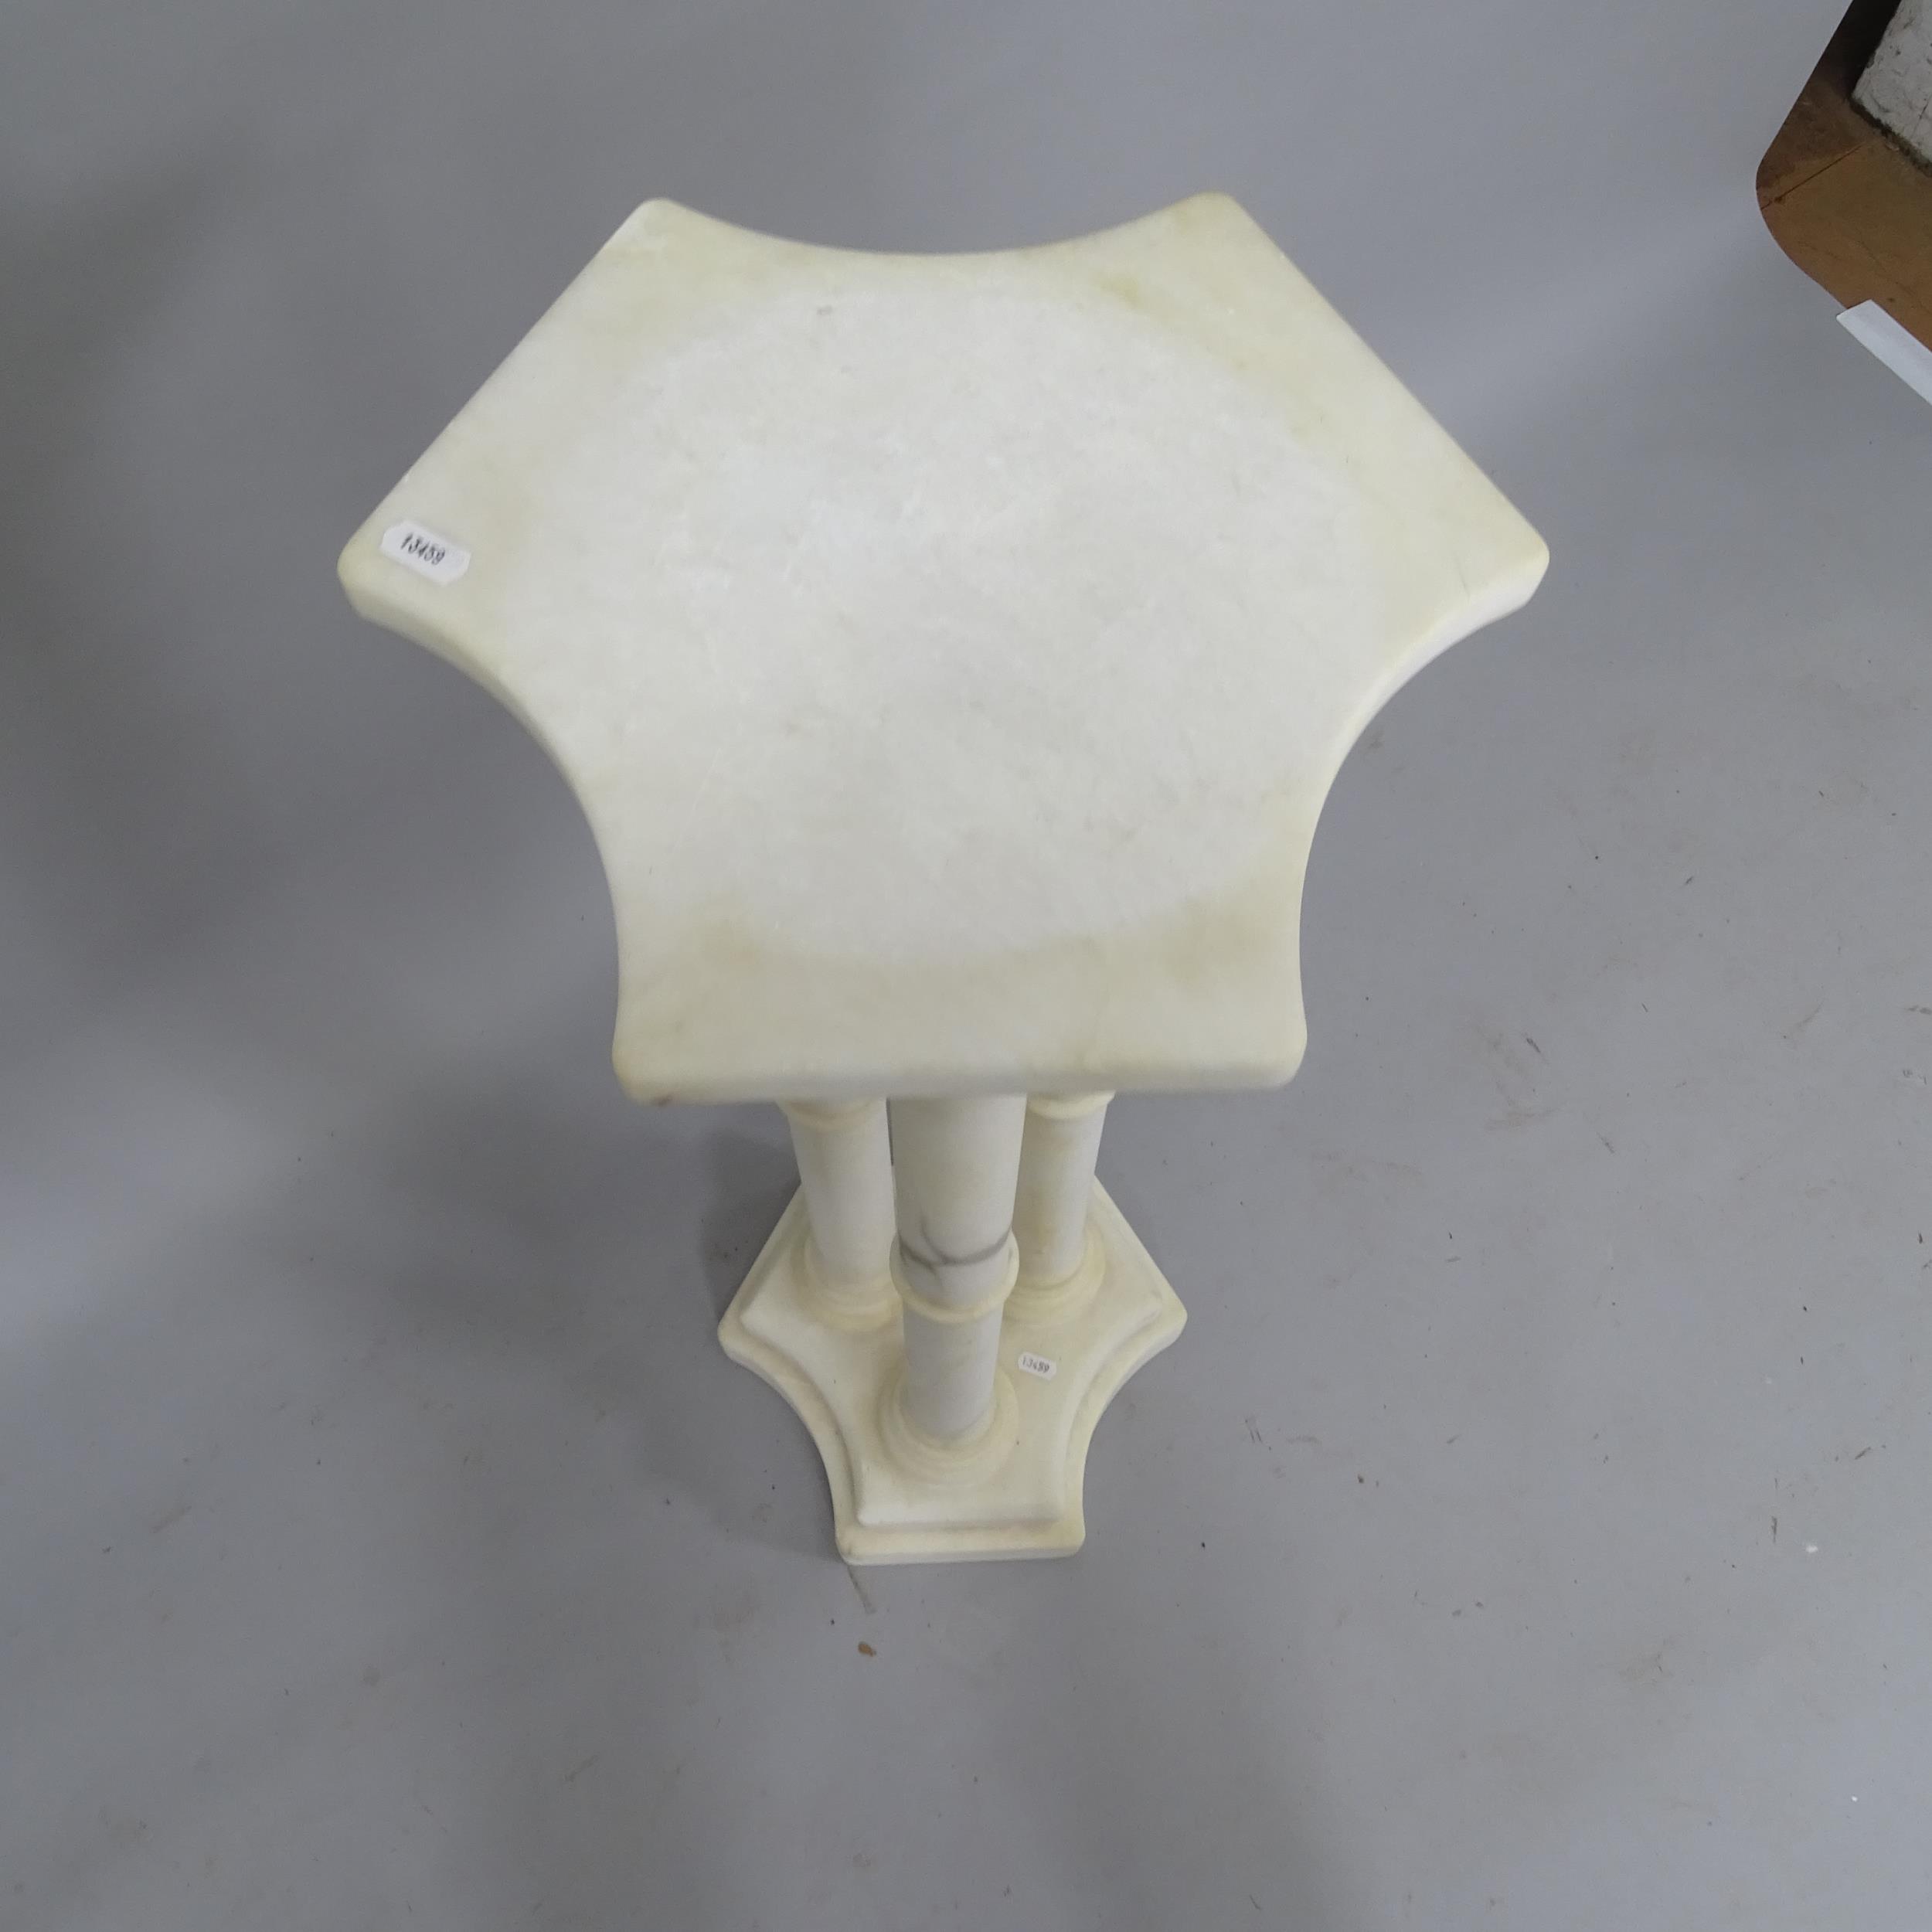 An alabaster pedestal, H89cm - Image 2 of 2